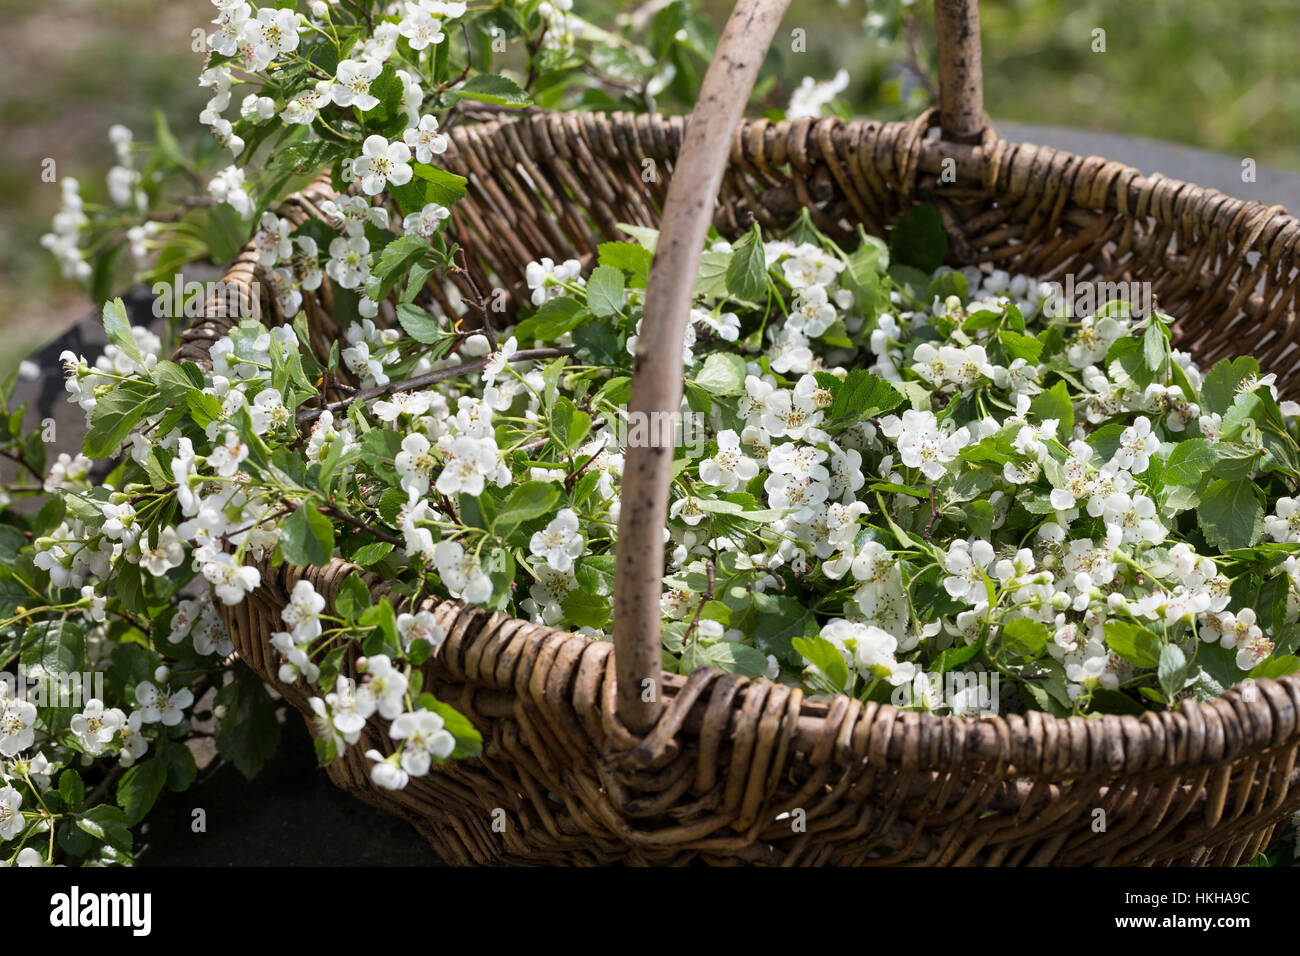 Weißdornblüten, Weißdorn-Blüten, Ernte, einem Korb, Weißdorn, Weissdorn, Weiß-Dorn, Weiss-Dorn, Crataegus spec., l'anglais, l'Aubépine Banque D'Images